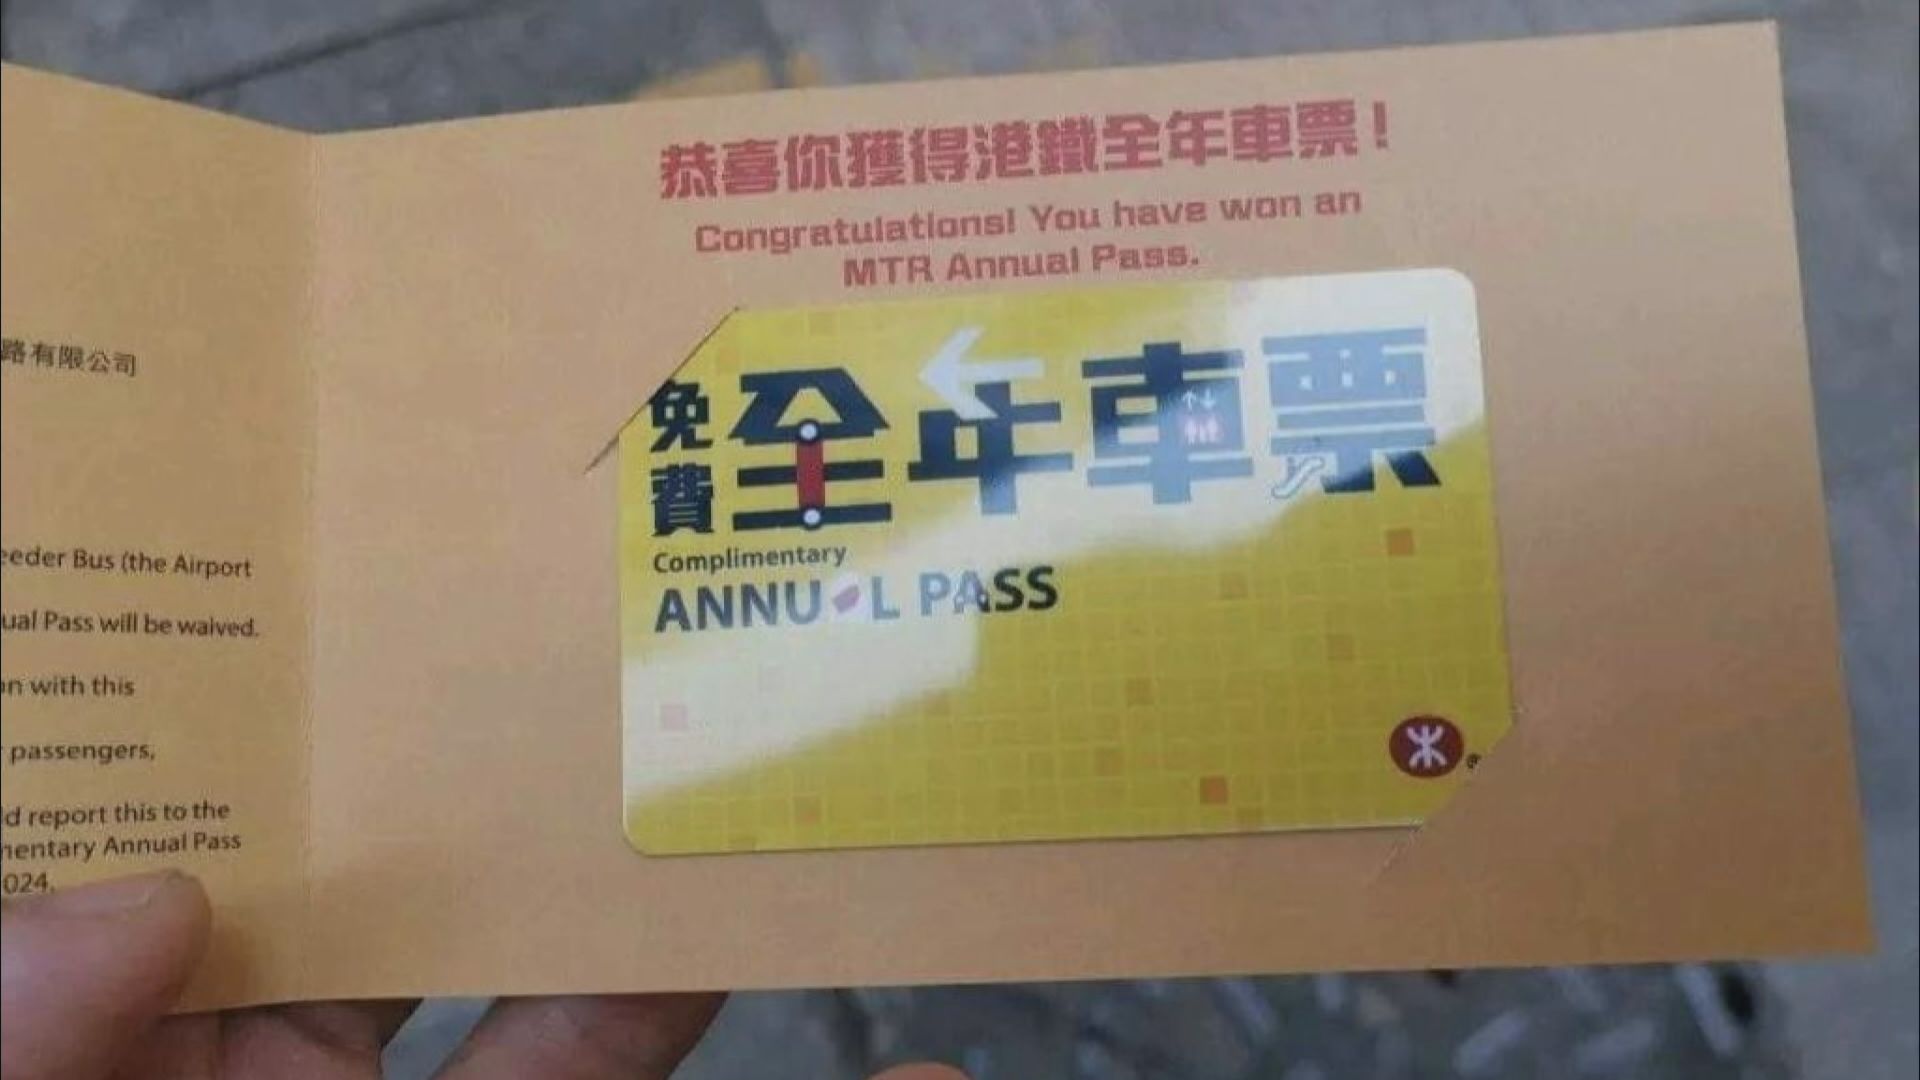 網上流傳港鐵寄免費全年車票 港鐵澄清無發出全年車票